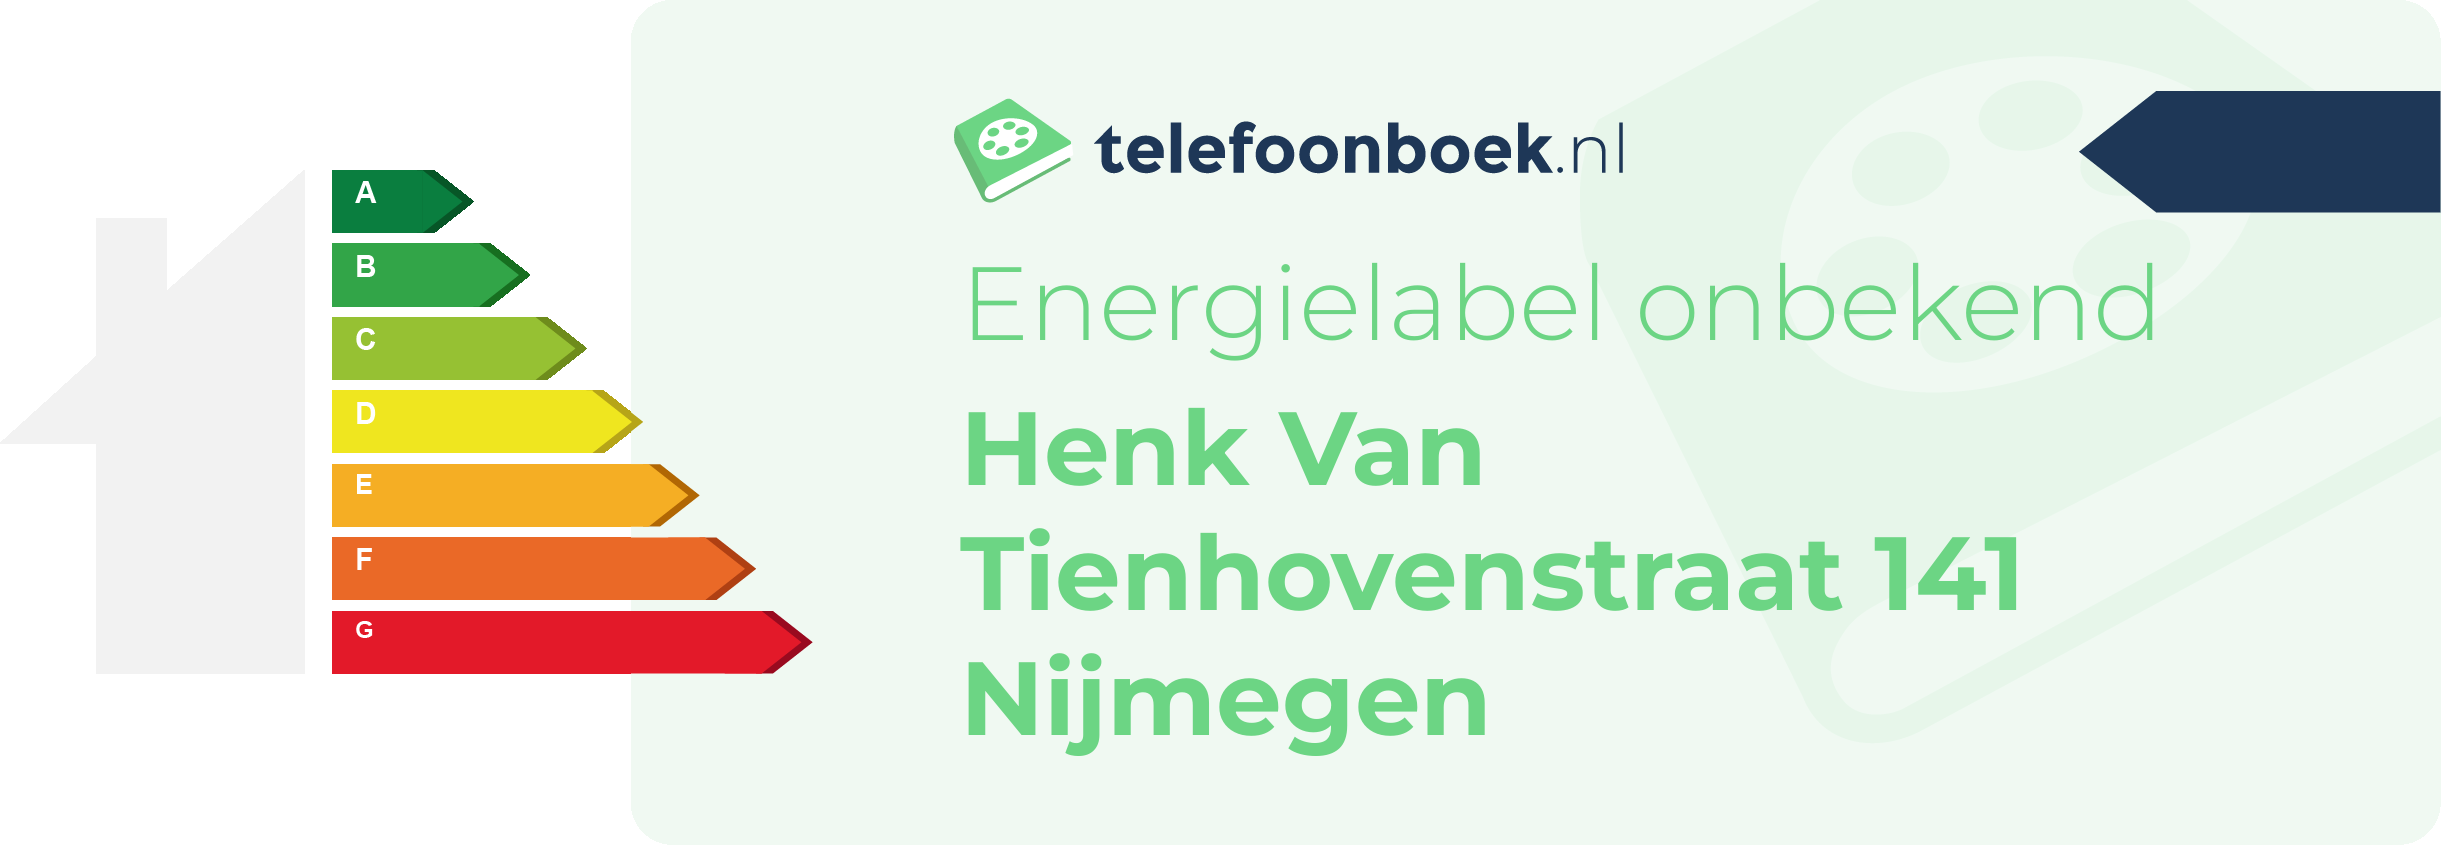 Energielabel Henk Van Tienhovenstraat 141 Nijmegen